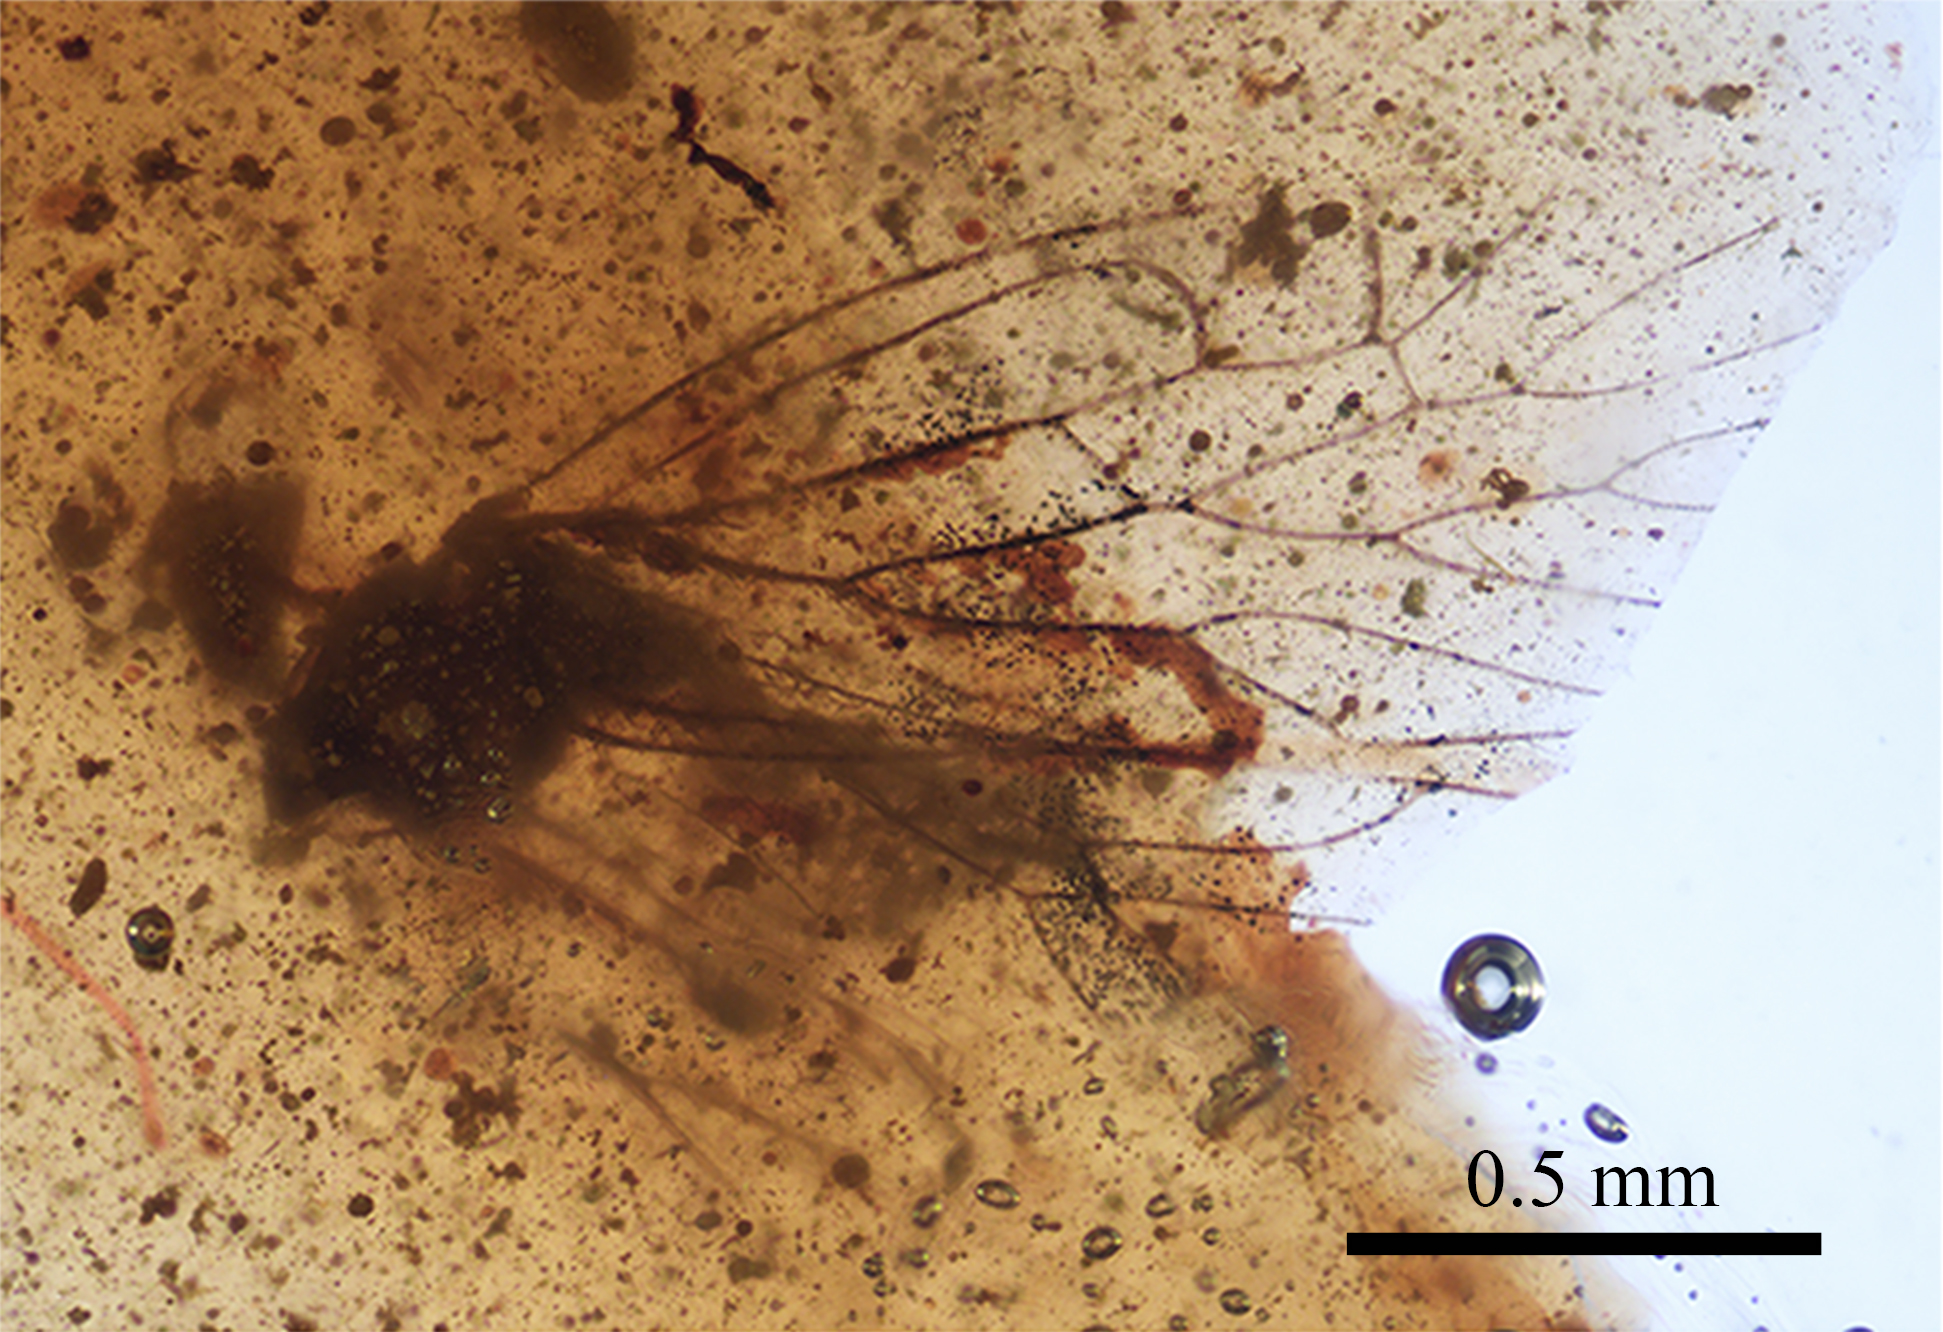 Foto de l'Holotipus de la nova espècie descrita en aquest treball